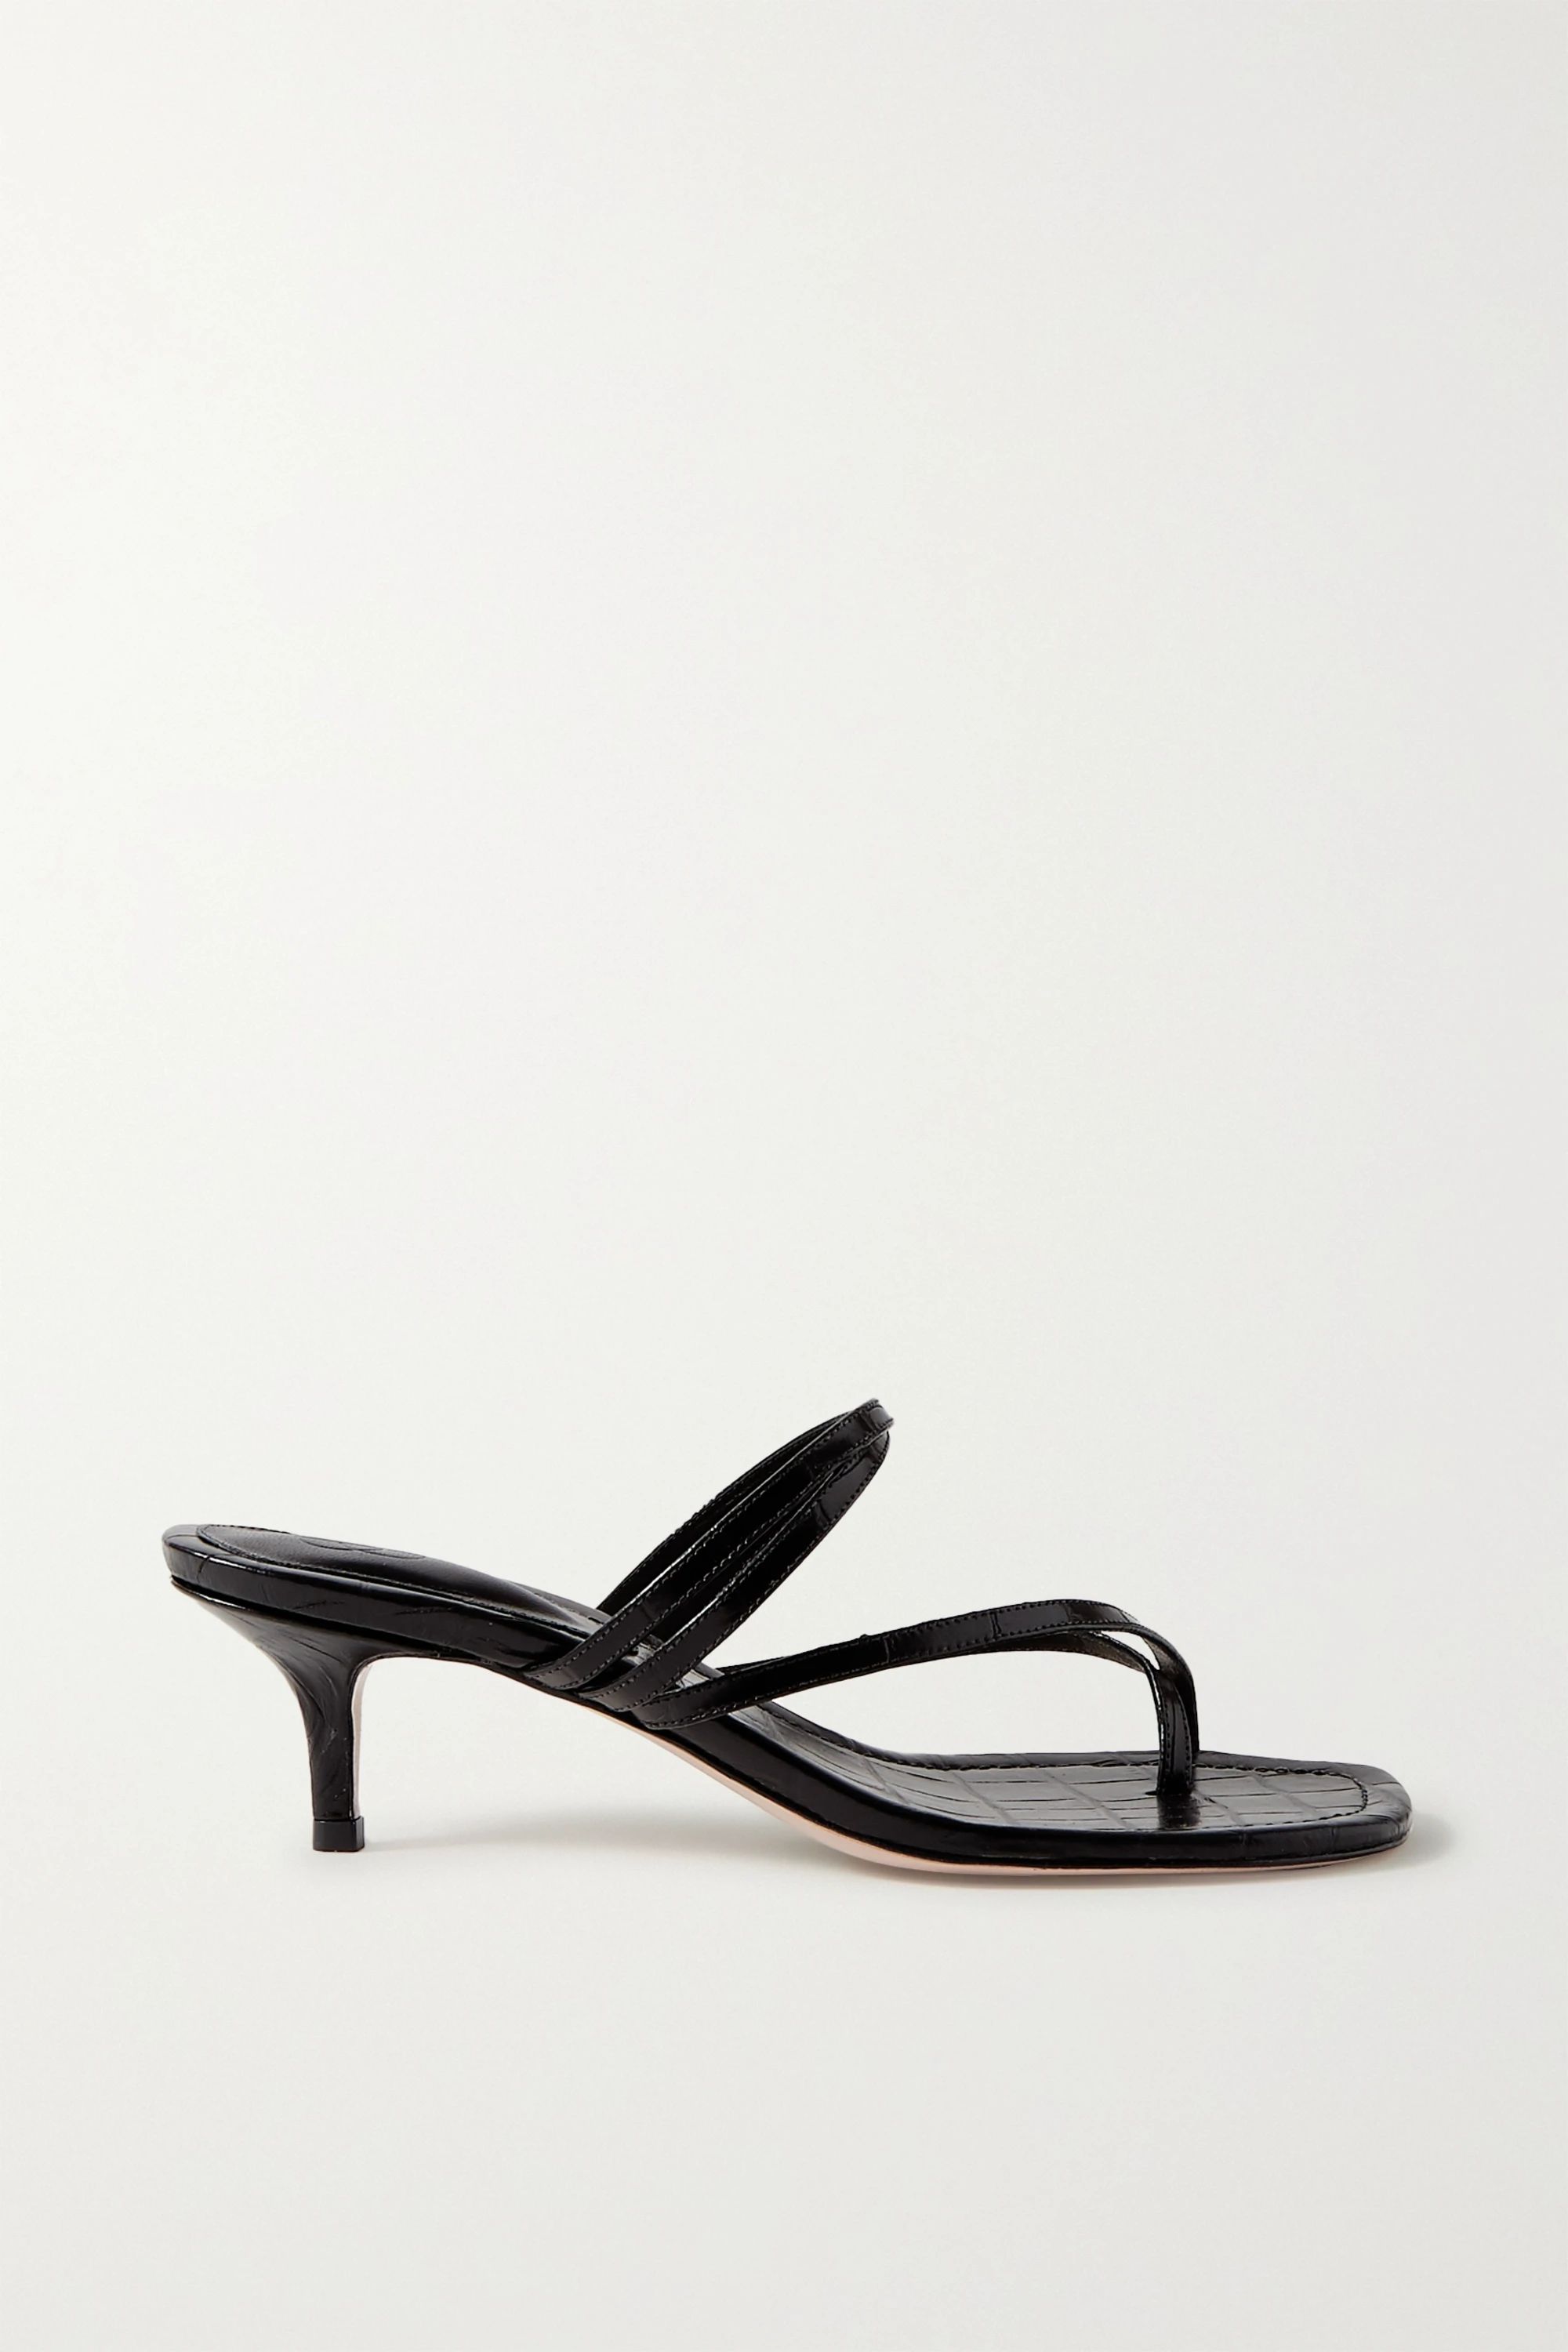 Black Croc-effect leather sandals | Porte & Paire | NET-A-PORTER | NET-A-PORTER (US)